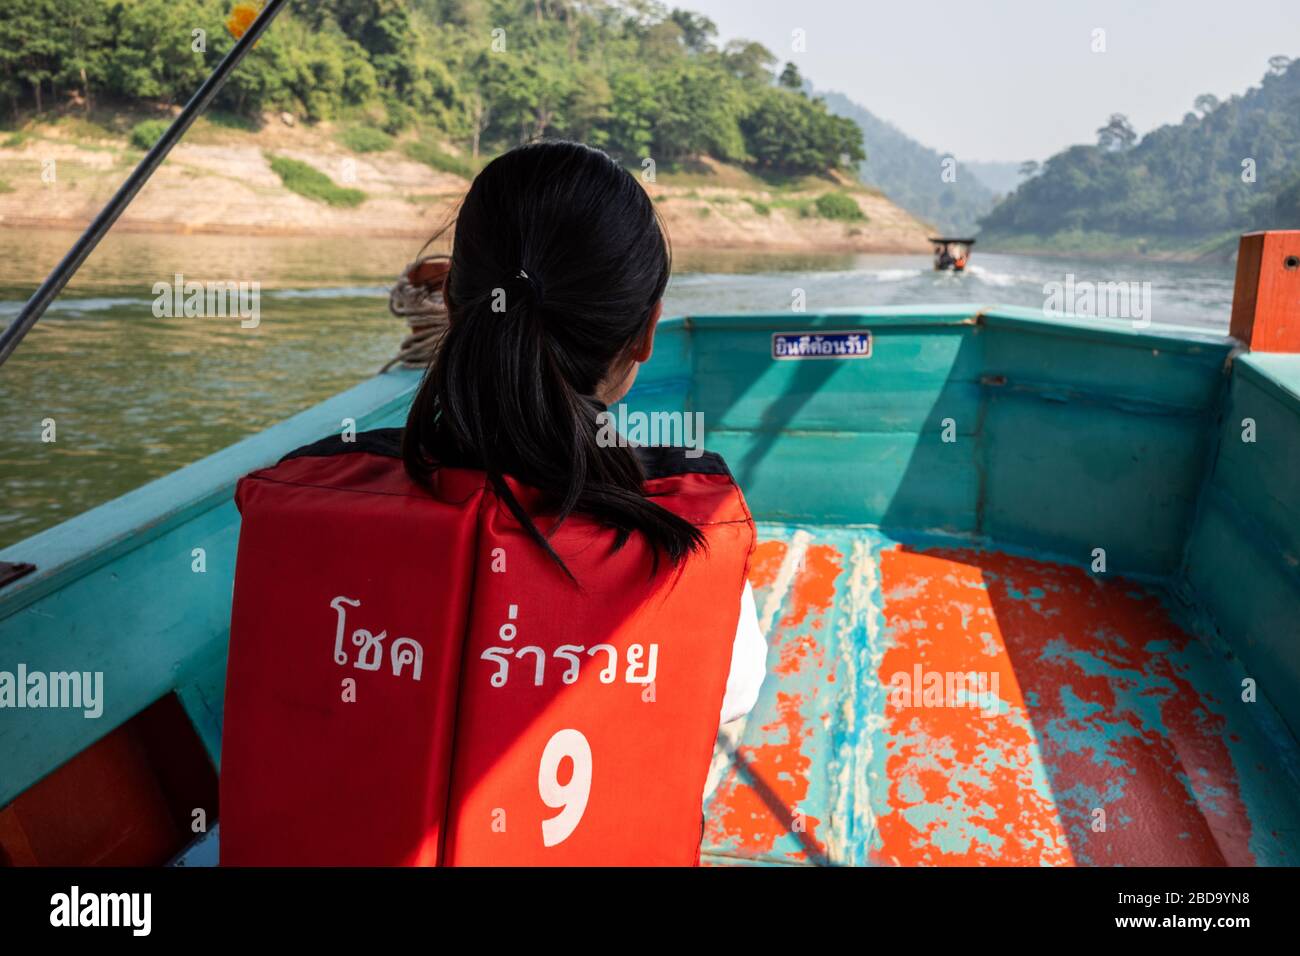 Nakhon Nayok, Thailand - 2. Februar 2020: Junges thailändisches Mädchen trägt orangefarbene Rettungsweste mit Namen des Bootes in thailändischer Sprache, während es Holzboot mit sp nimmt Stockfoto